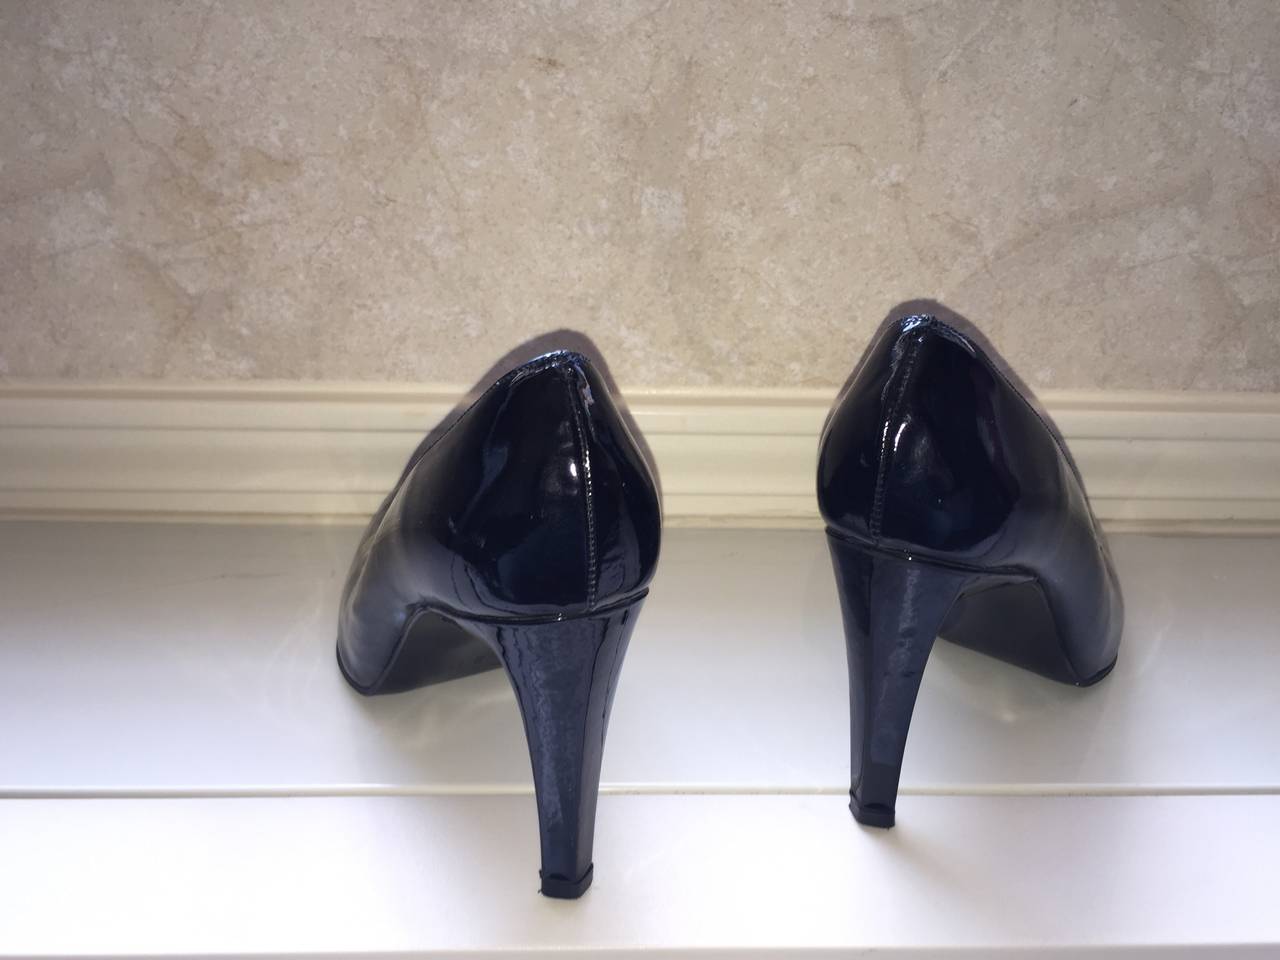 Vintage Carlos Falchi Classic Black Patent Leather Pumps / Heels / Shoes Size 8 For Sale 4